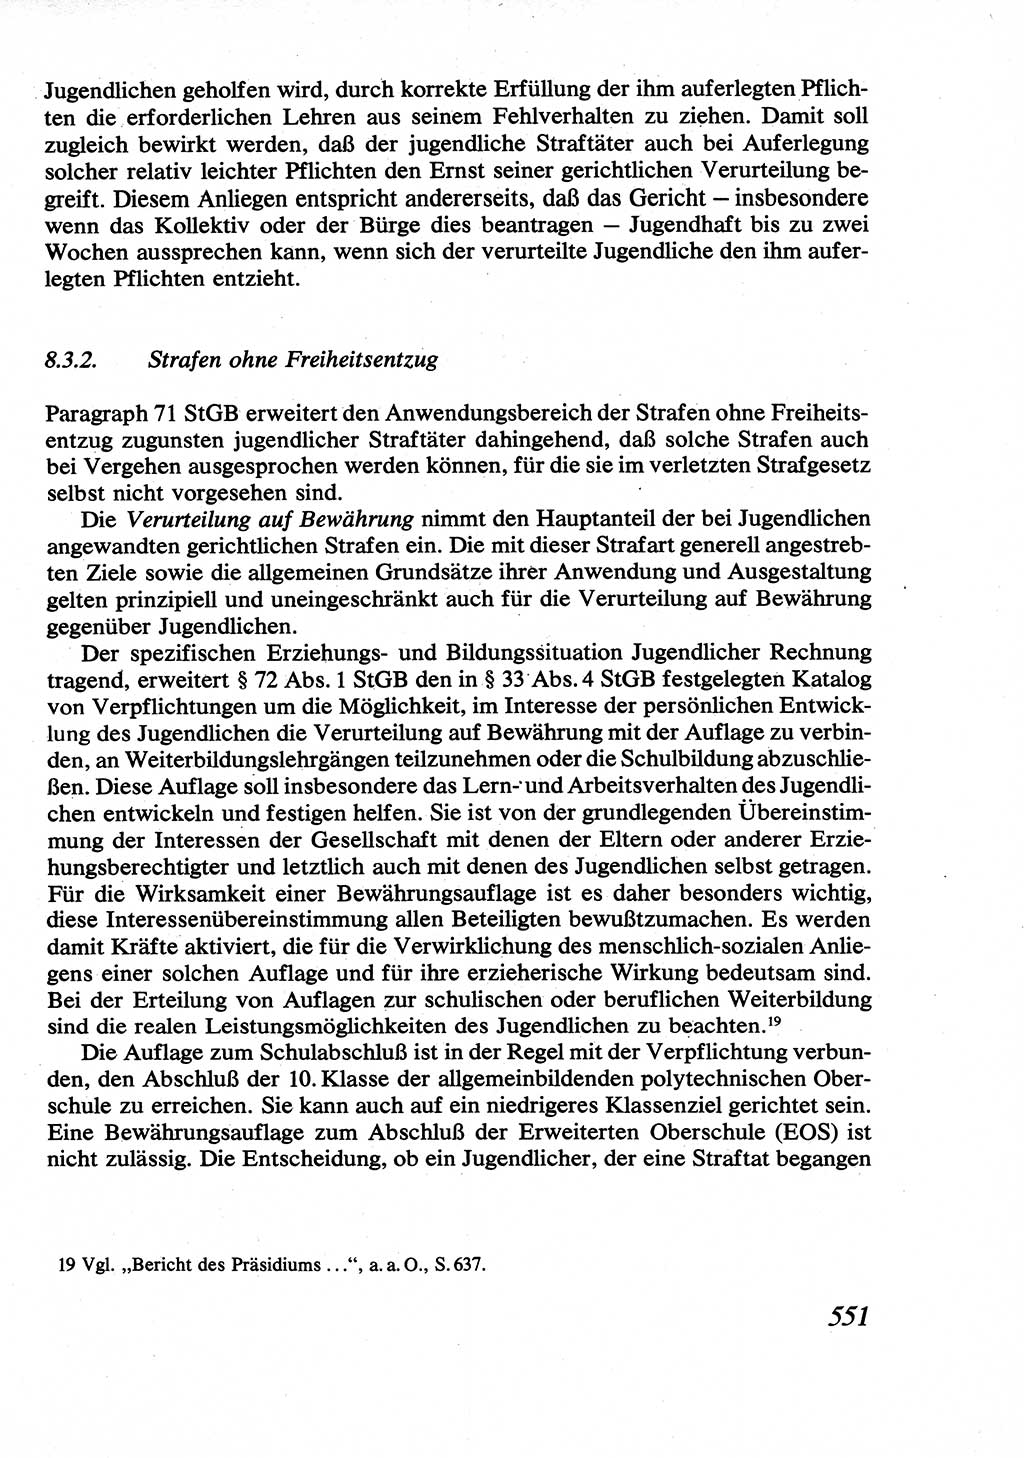 Strafrecht [Deutsche Demokratische Republik (DDR)], Allgemeiner Teil, Lehrbuch 1976, Seite 551 (Strafr. DDR AT Lb. 1976, S. 551)